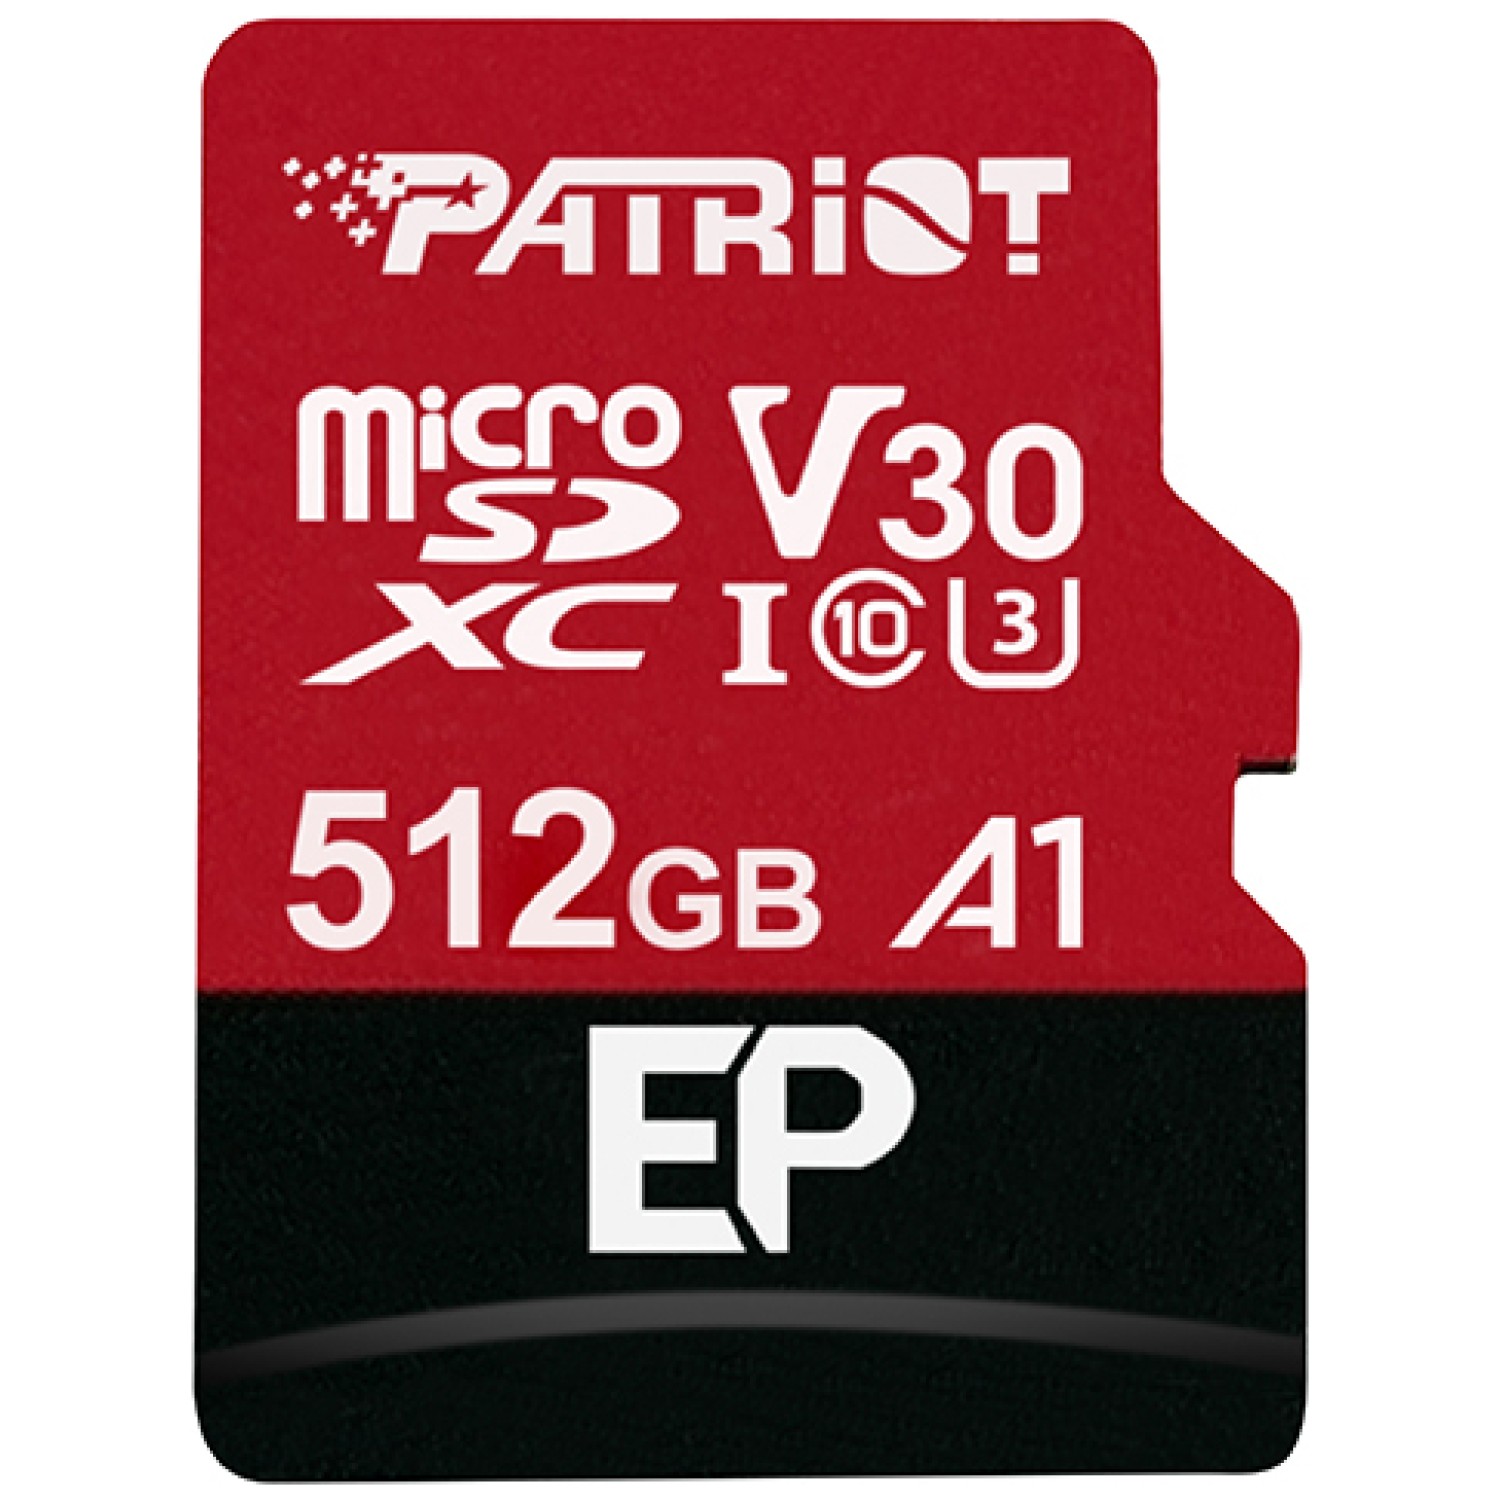 Patriot 512GB EP SDXC A1 / V30 microSD spominska kartica